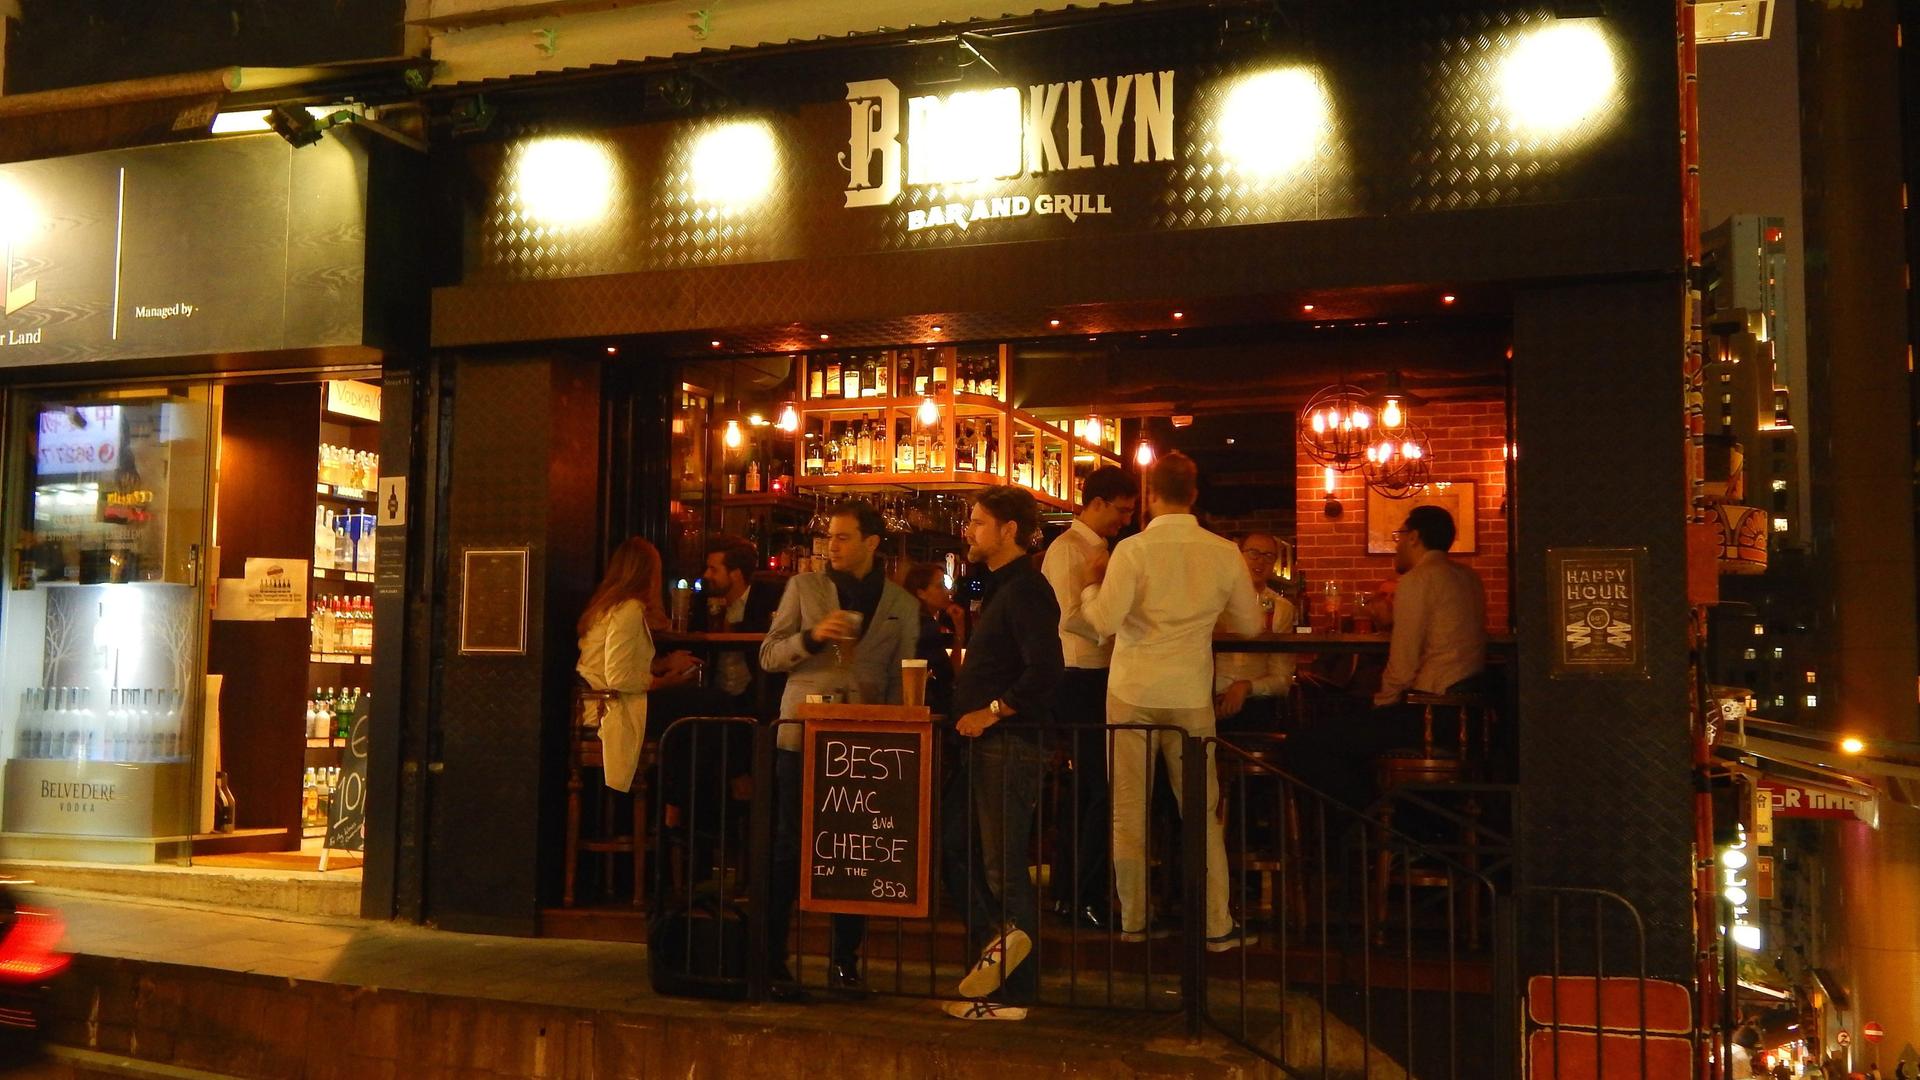 Brooklyn Bar and Grill im Szeneviertel SoHo auf Hong Kong Island gehoert zu den beliebten Happy Hour Treffs und ist eine typische American Bar. In SoHo hat sich eine stilvolle Subkultur aus edlen Wein- und Delikatessengeschaeften, Restaurants und Kneipen etabliert.